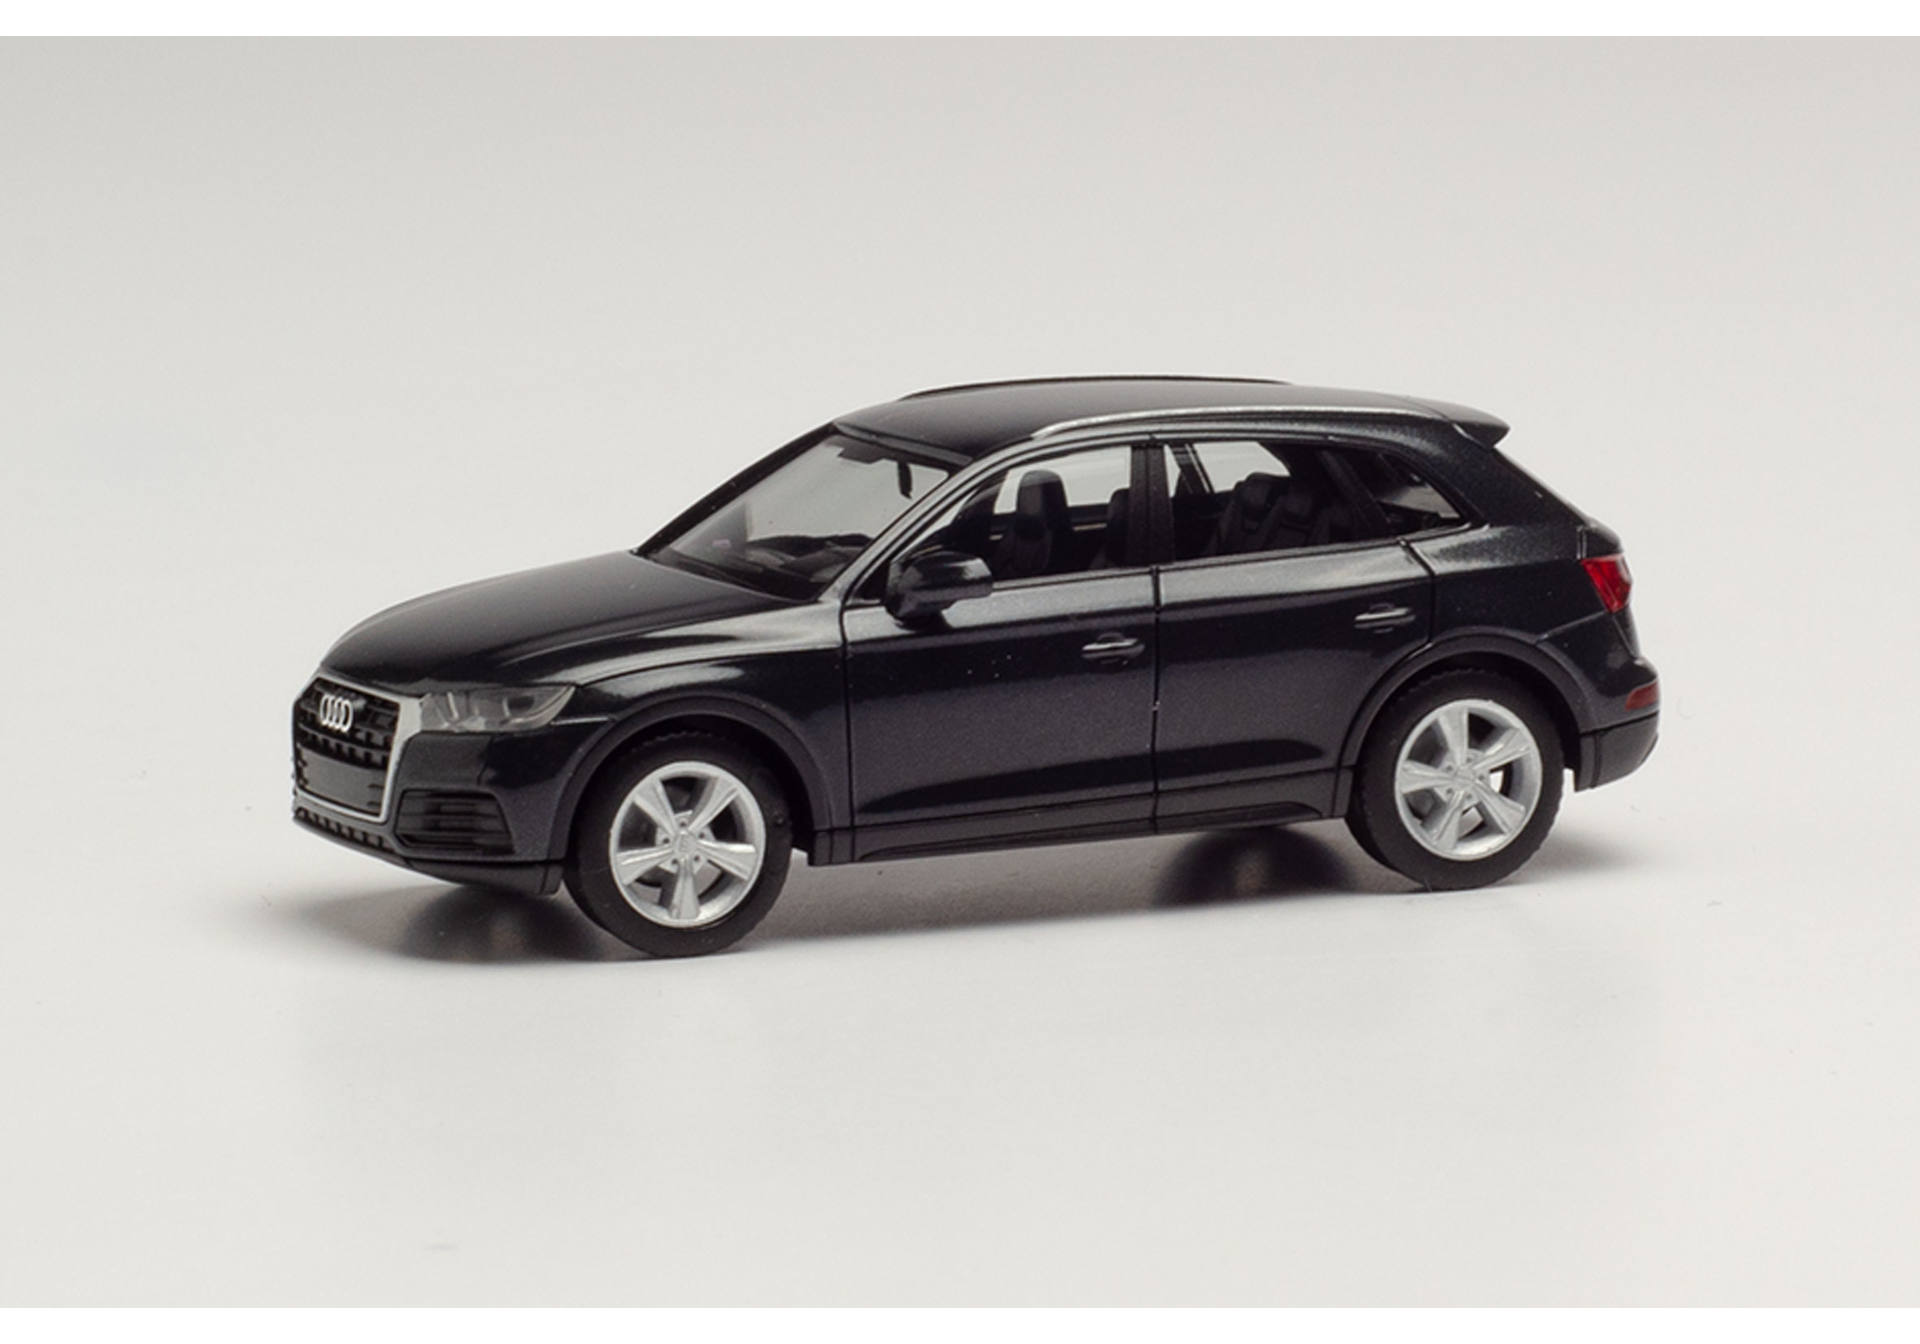 Audi Q5, manhattangrau metallic